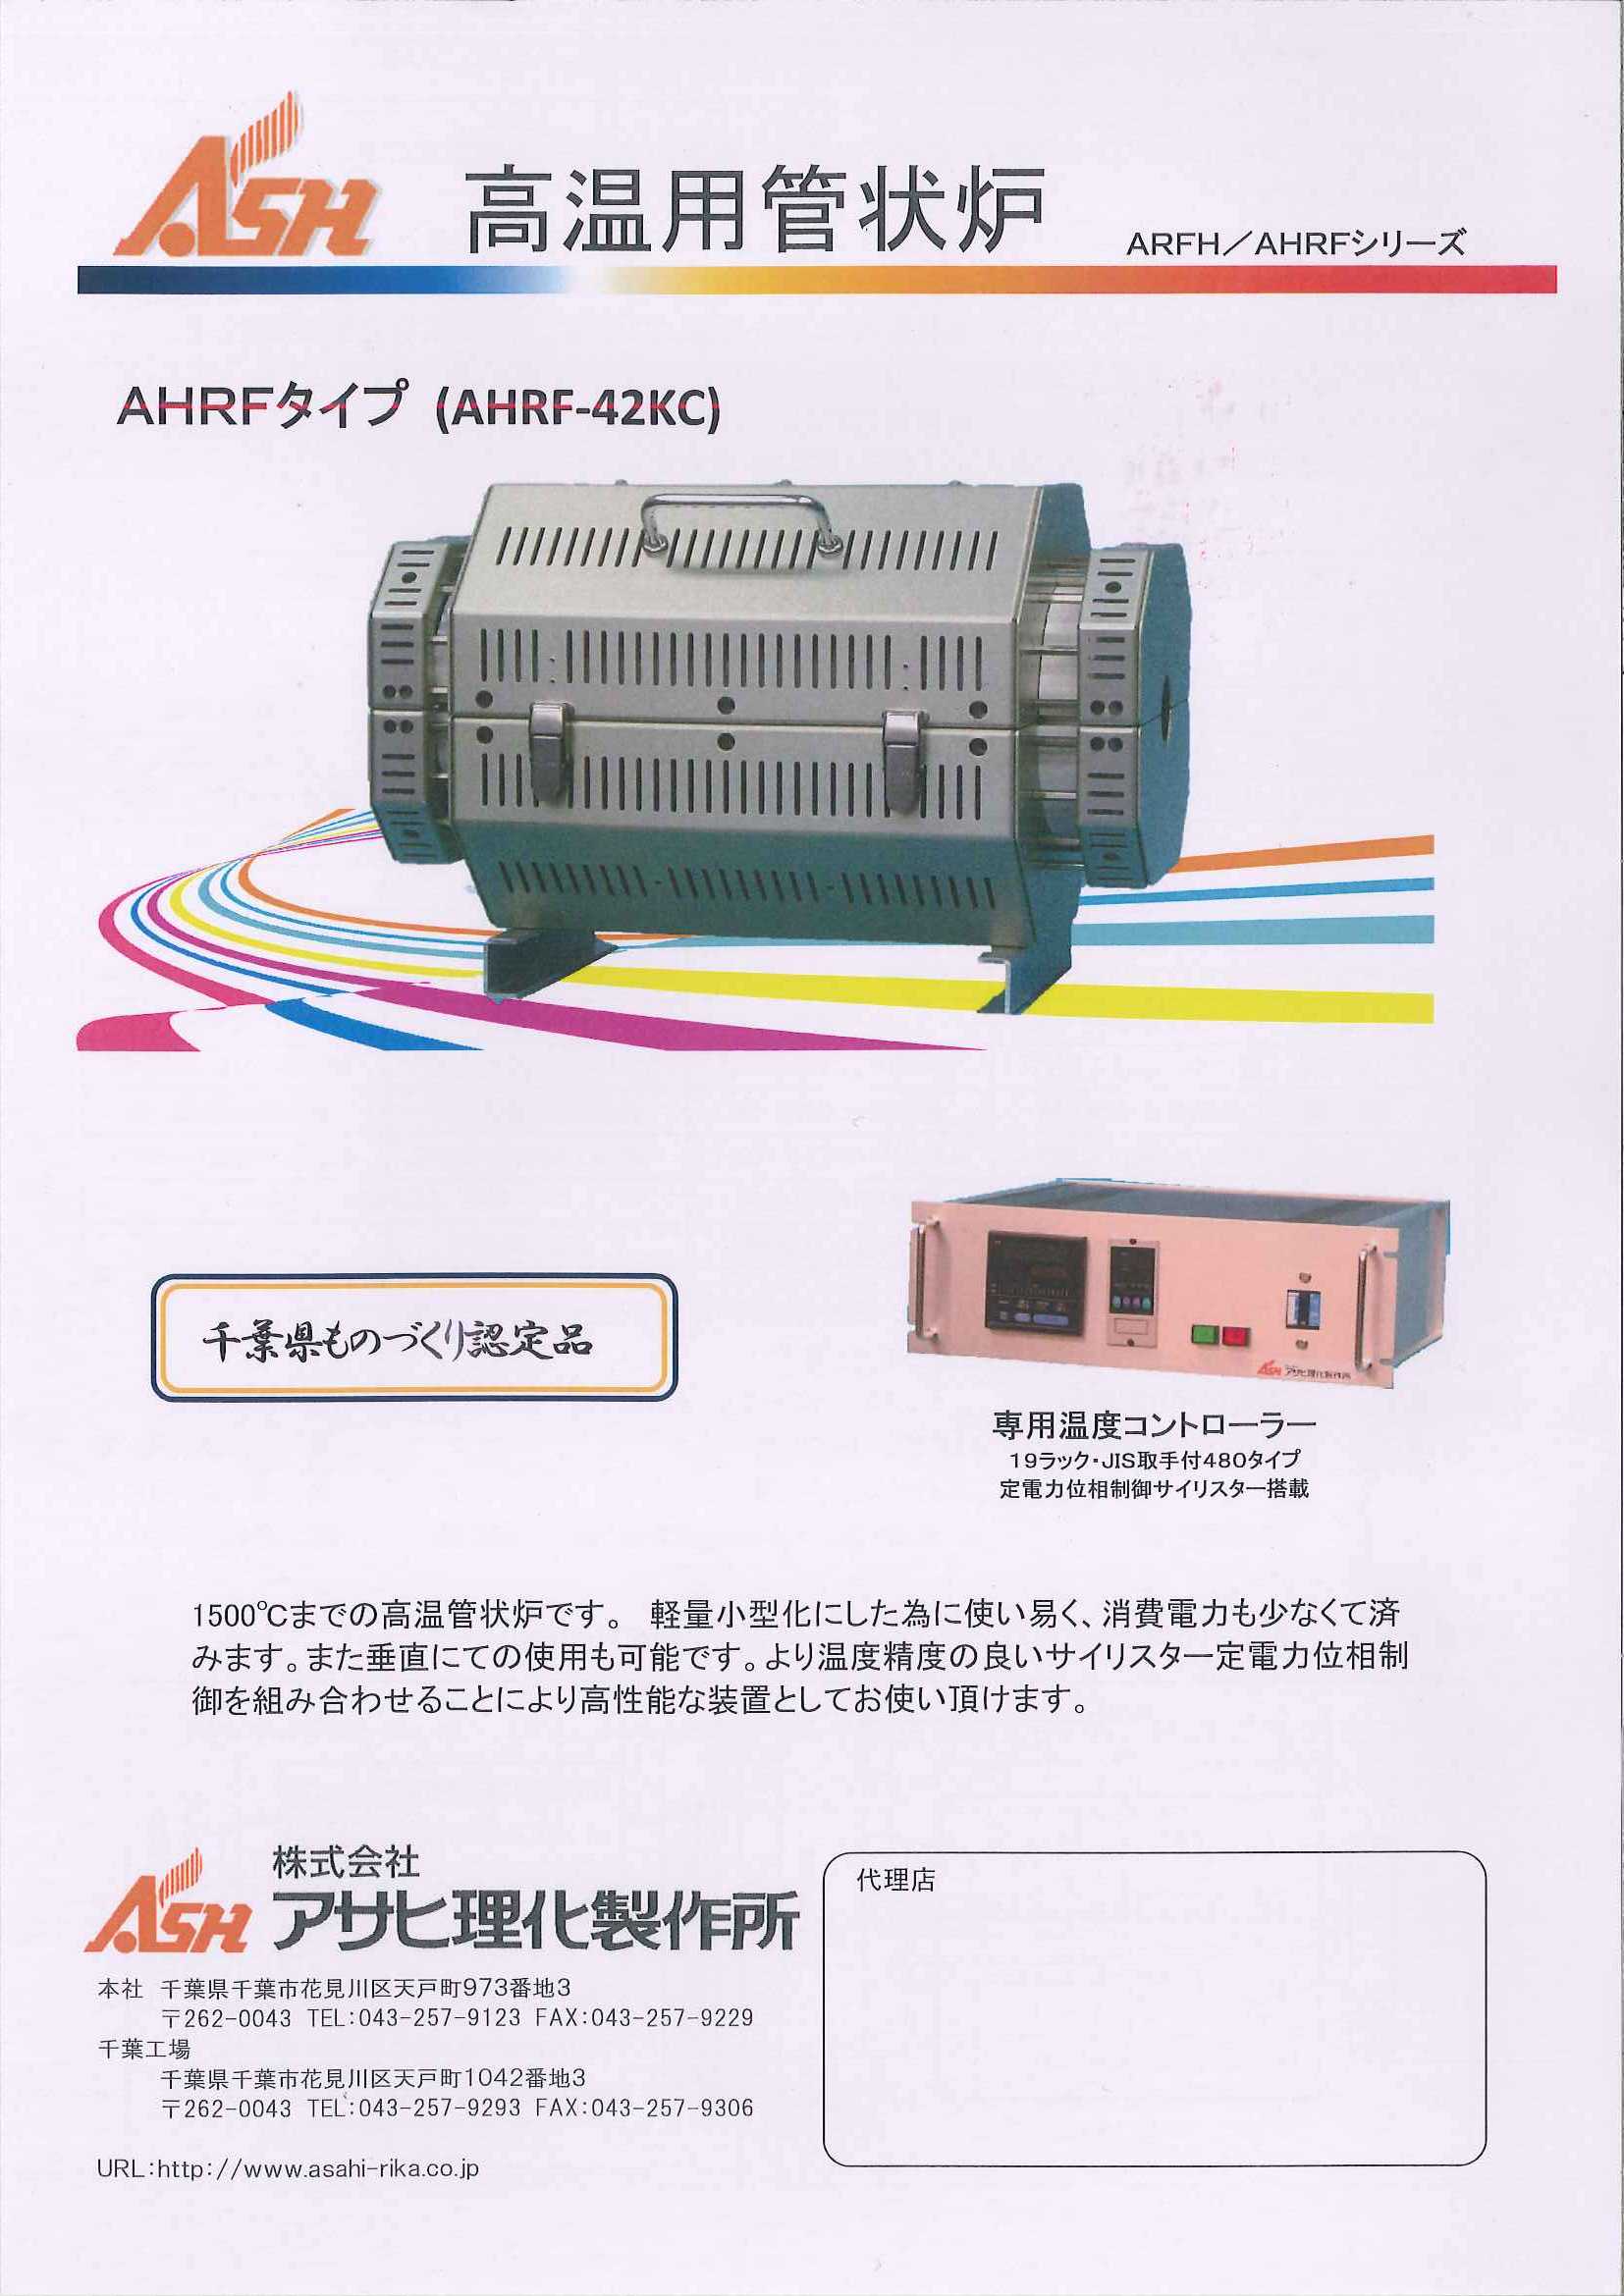 数量限定価格!! ものづくりのがんばり屋店アサヒ 管状炉 ARF-20KC 1台